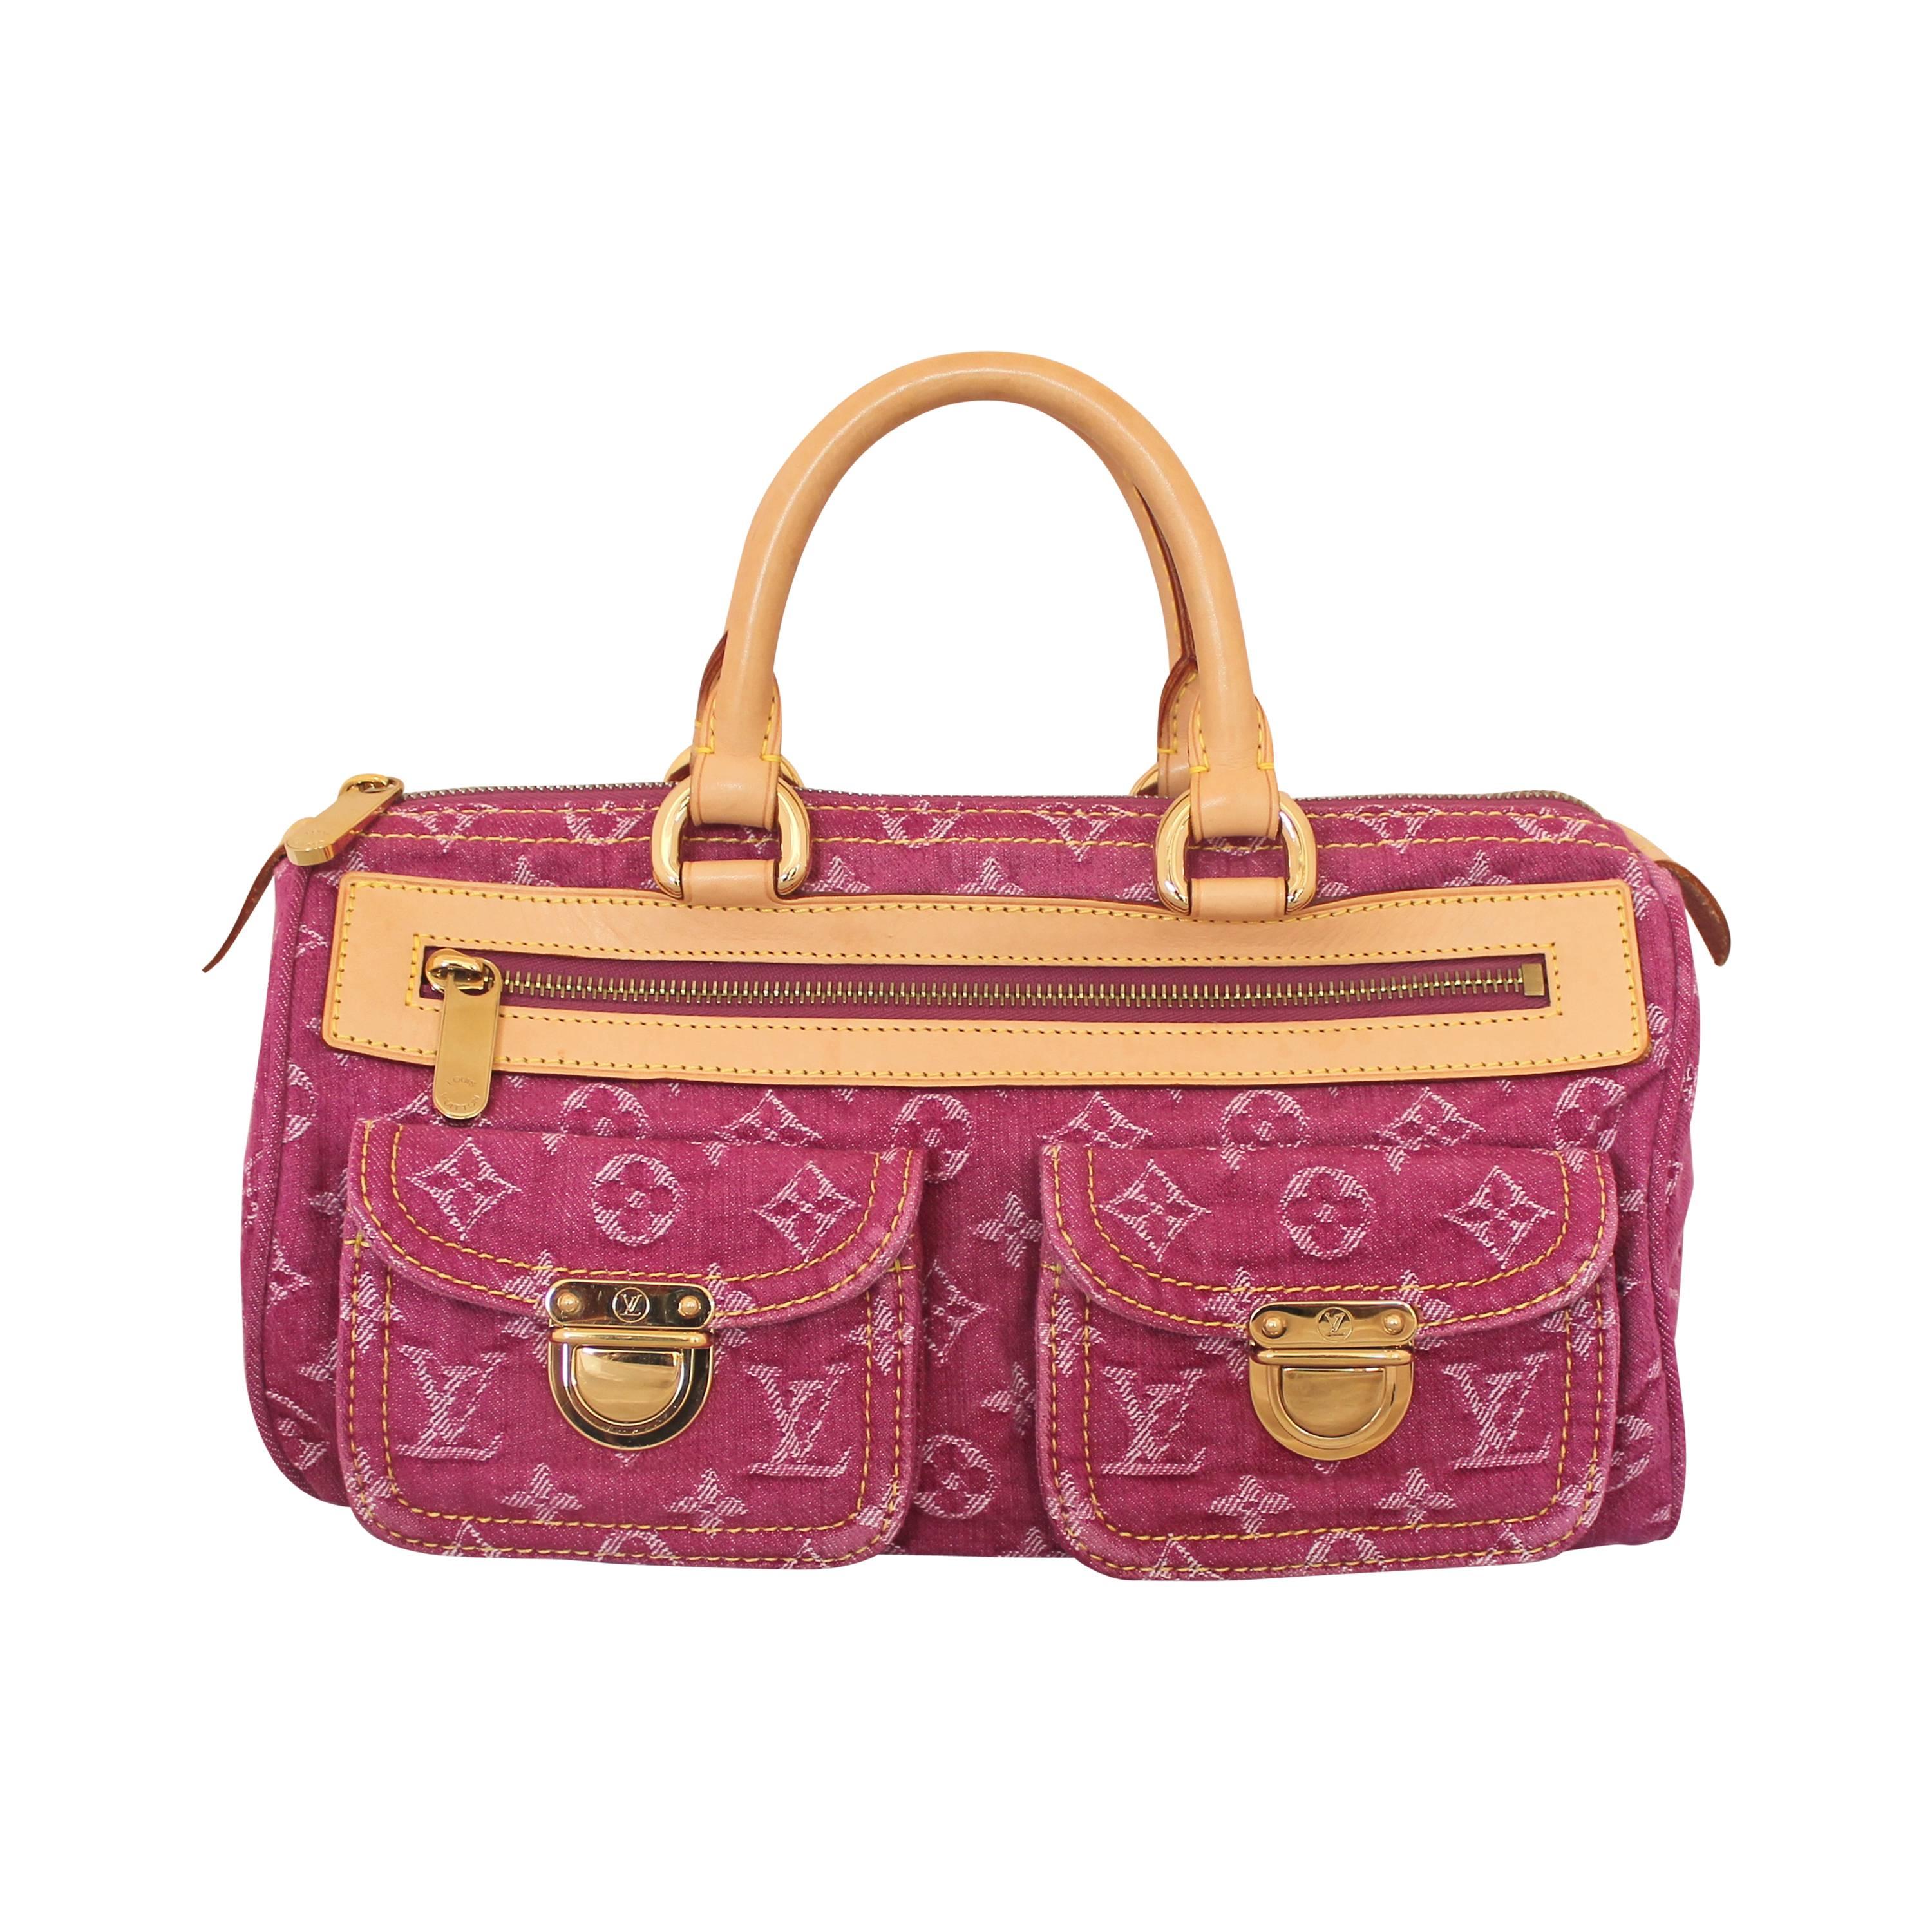 Louis Vuitton Pink Denim "Speedy" Handbag